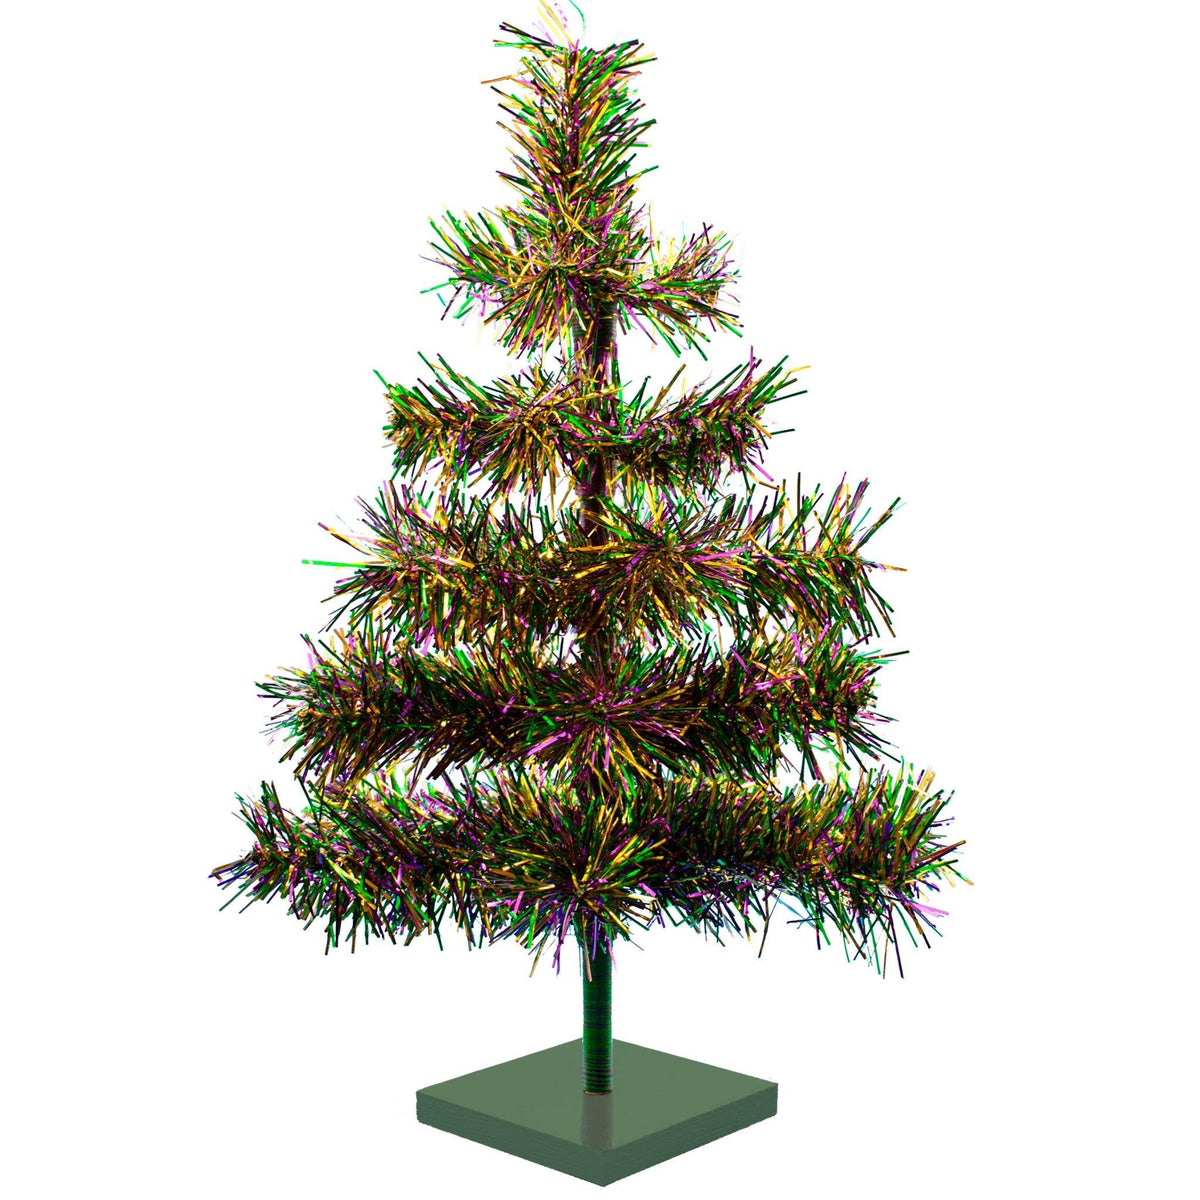 Mardi Gras 2016  Christmas tree themes, Christmas tree decorations,  Valentine tree